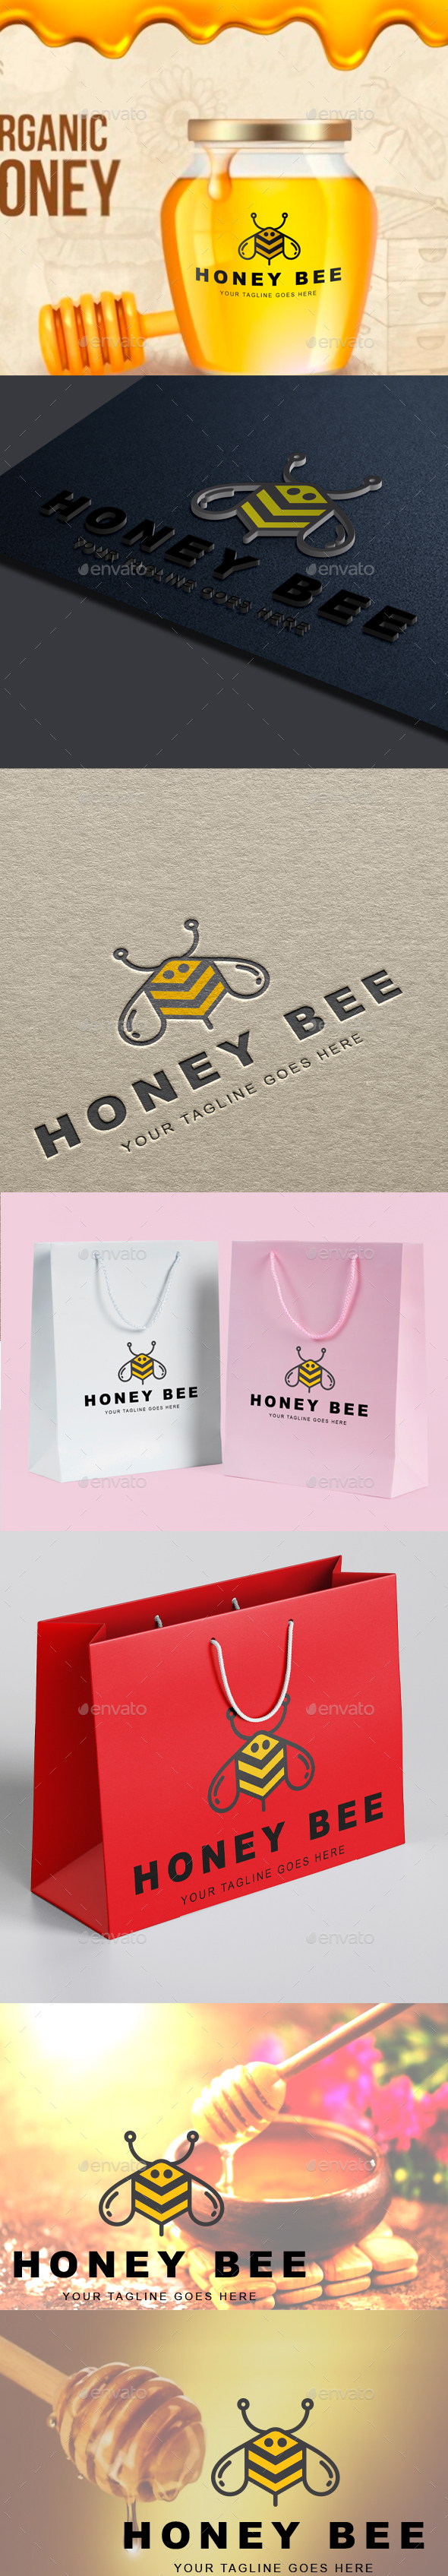 Honey Bee Organic Honey